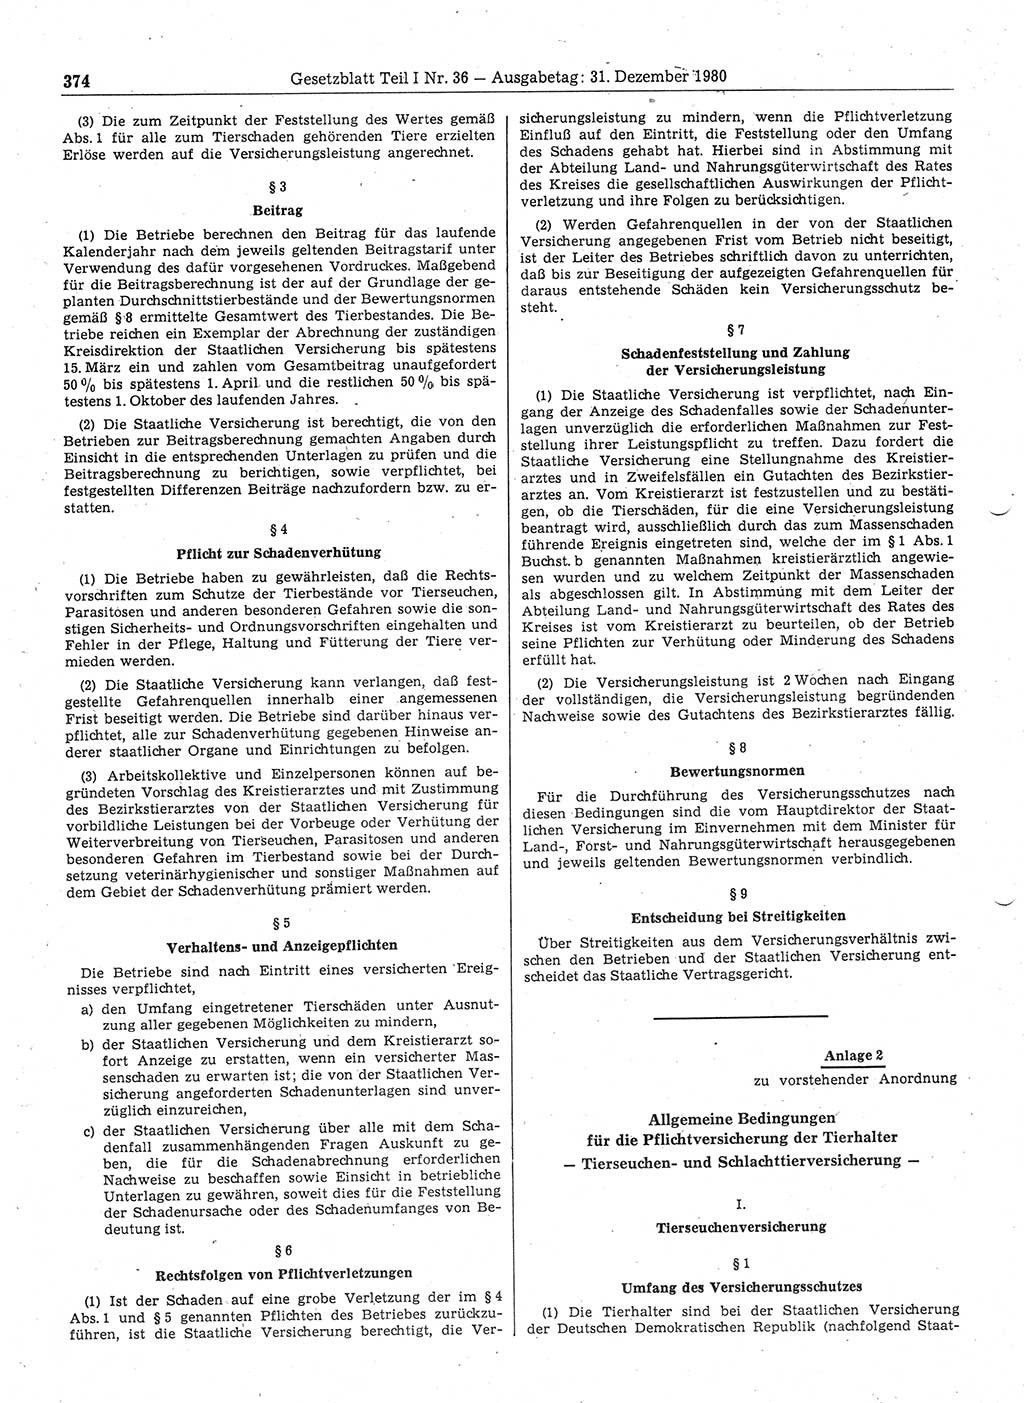 Gesetzblatt (GBl.) der Deutschen Demokratischen Republik (DDR) Teil Ⅰ 1980, Seite 374 (GBl. DDR Ⅰ 1980, S. 374)